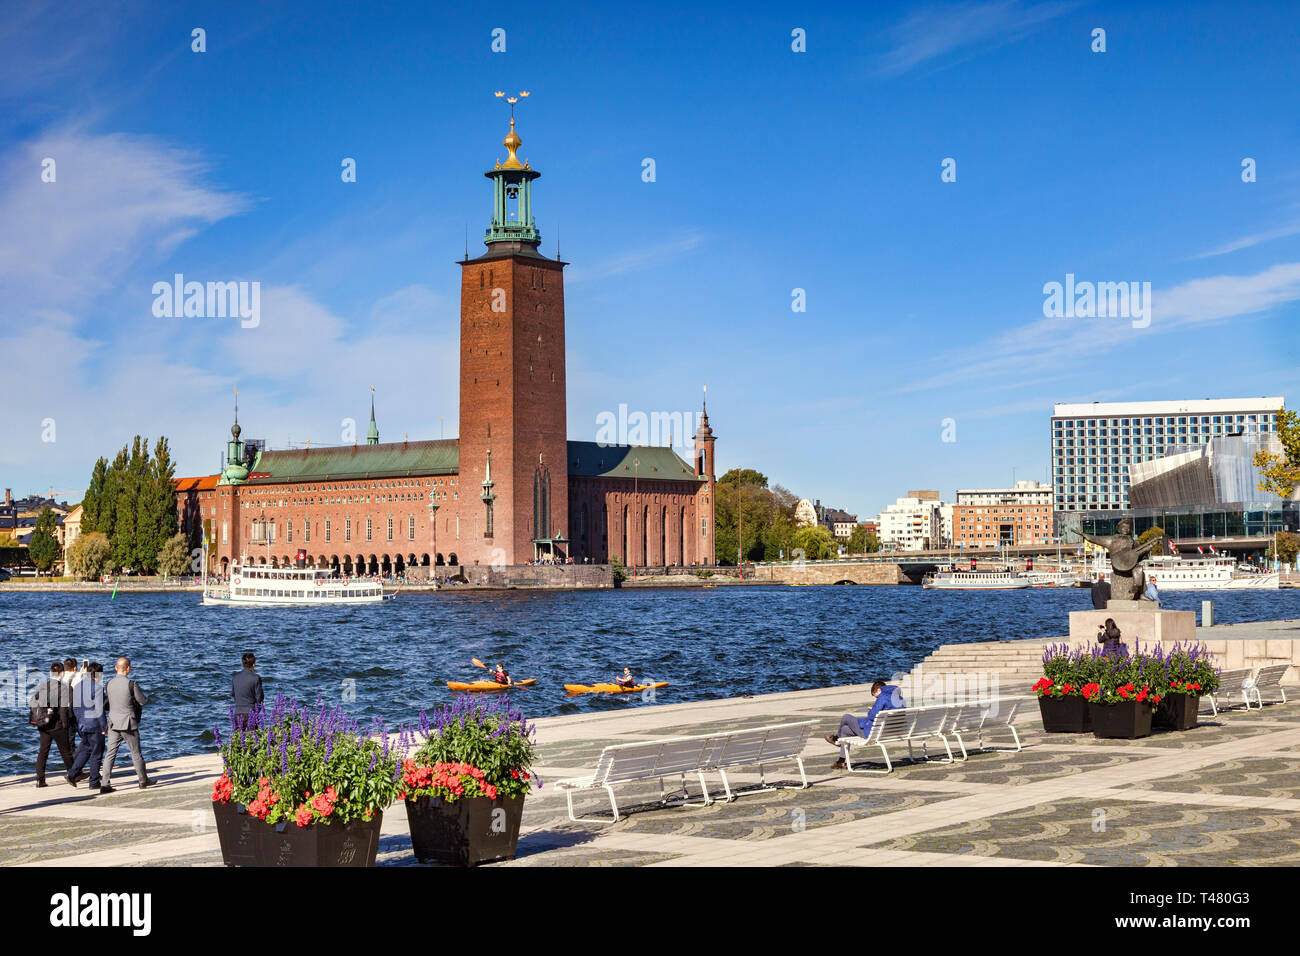 16 de septiembre de 2018: Estocolmo, Suecia - El Ayuntamiento, uno de los edificios más famosos de Suecia, y el hogar del banquete Nobel. Dos kayaks en el agua. Foto de stock